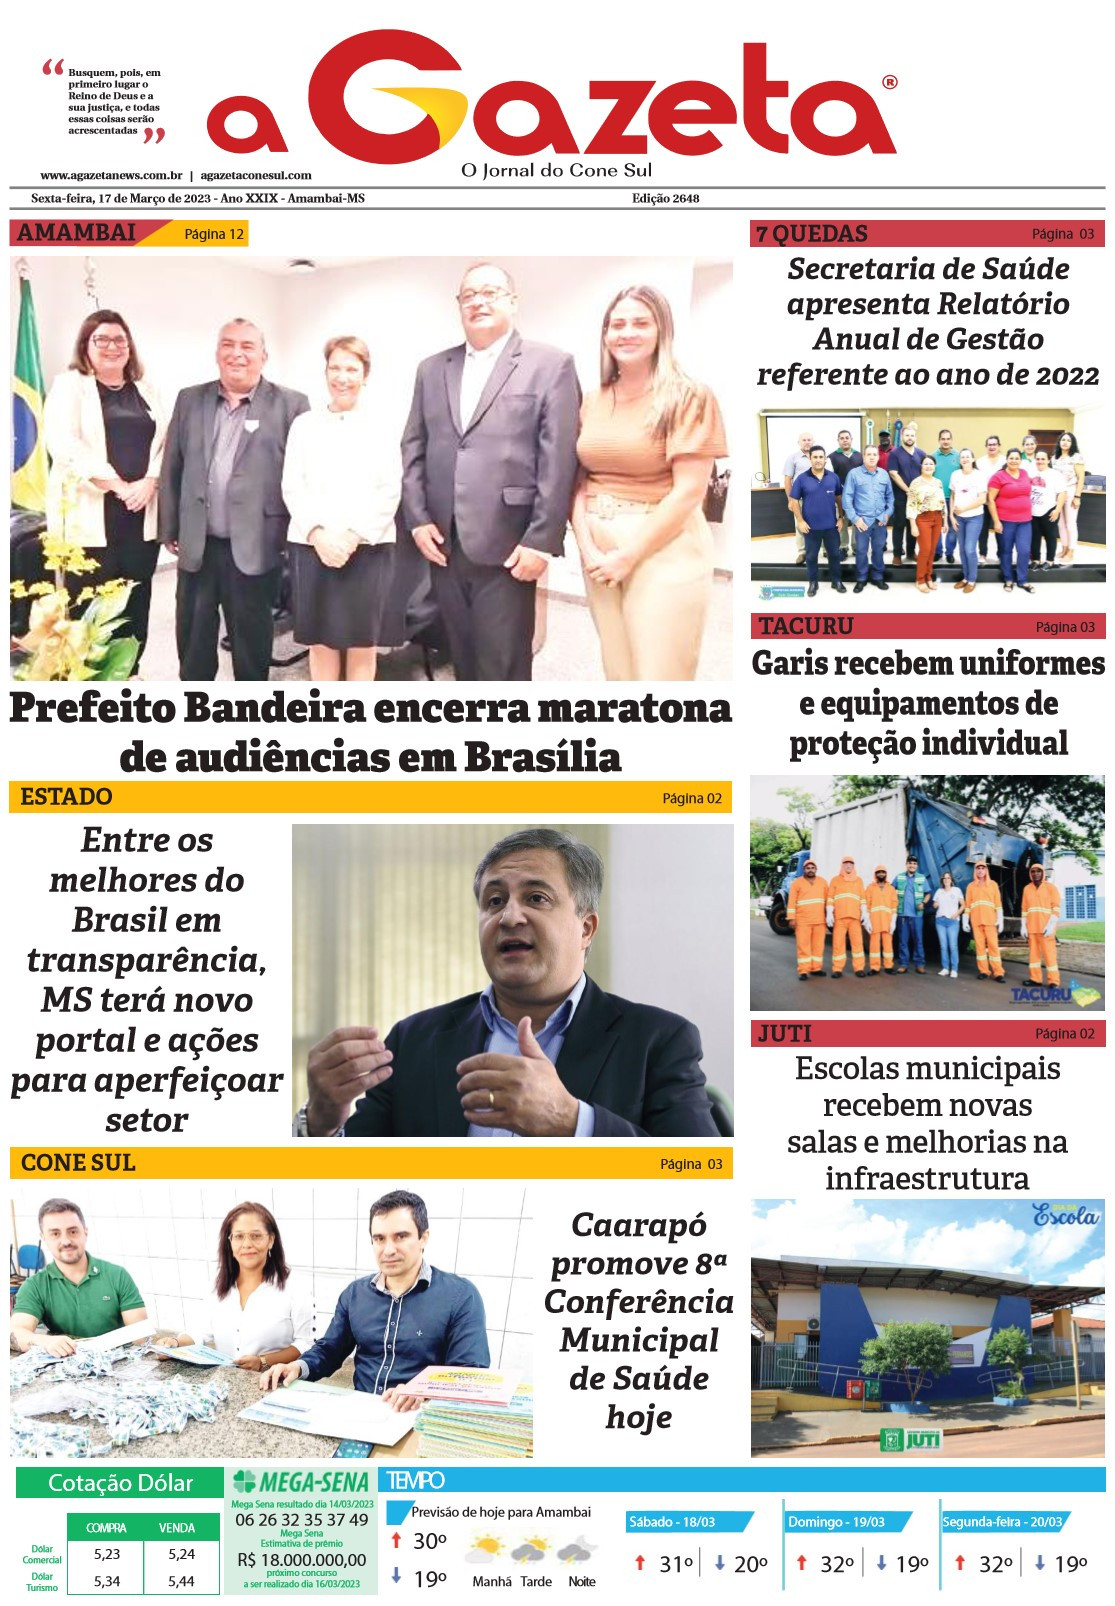 Confira a edição digital do jornal impresso A Gazeta desta sexta-feira, dia 17